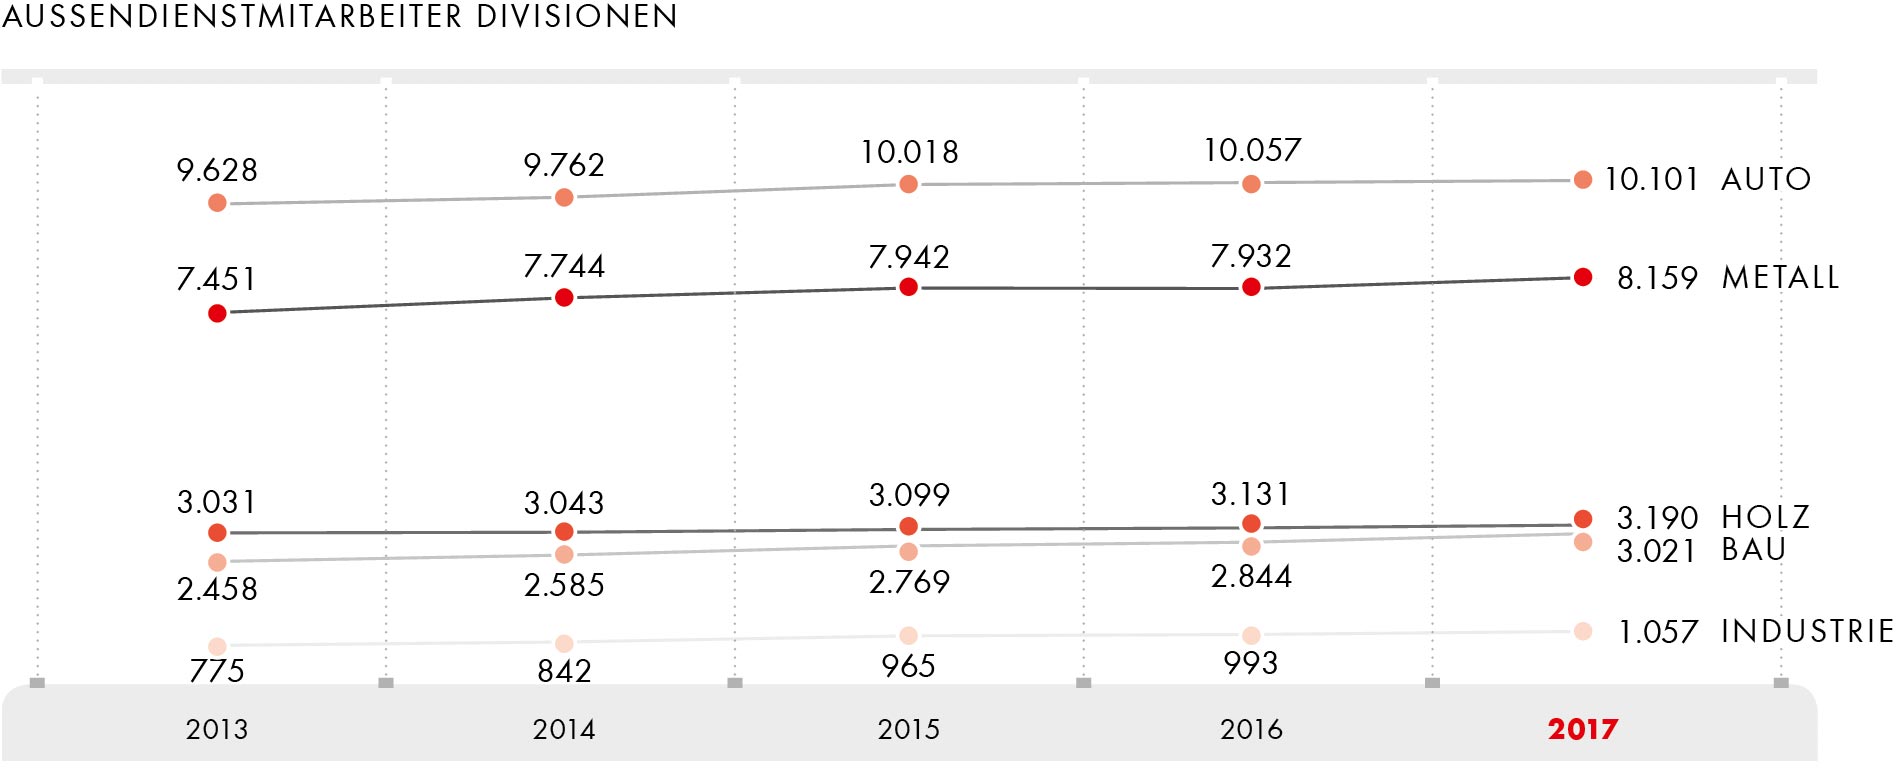 Außendienstmitarbeiter Divisionen 2013-2017